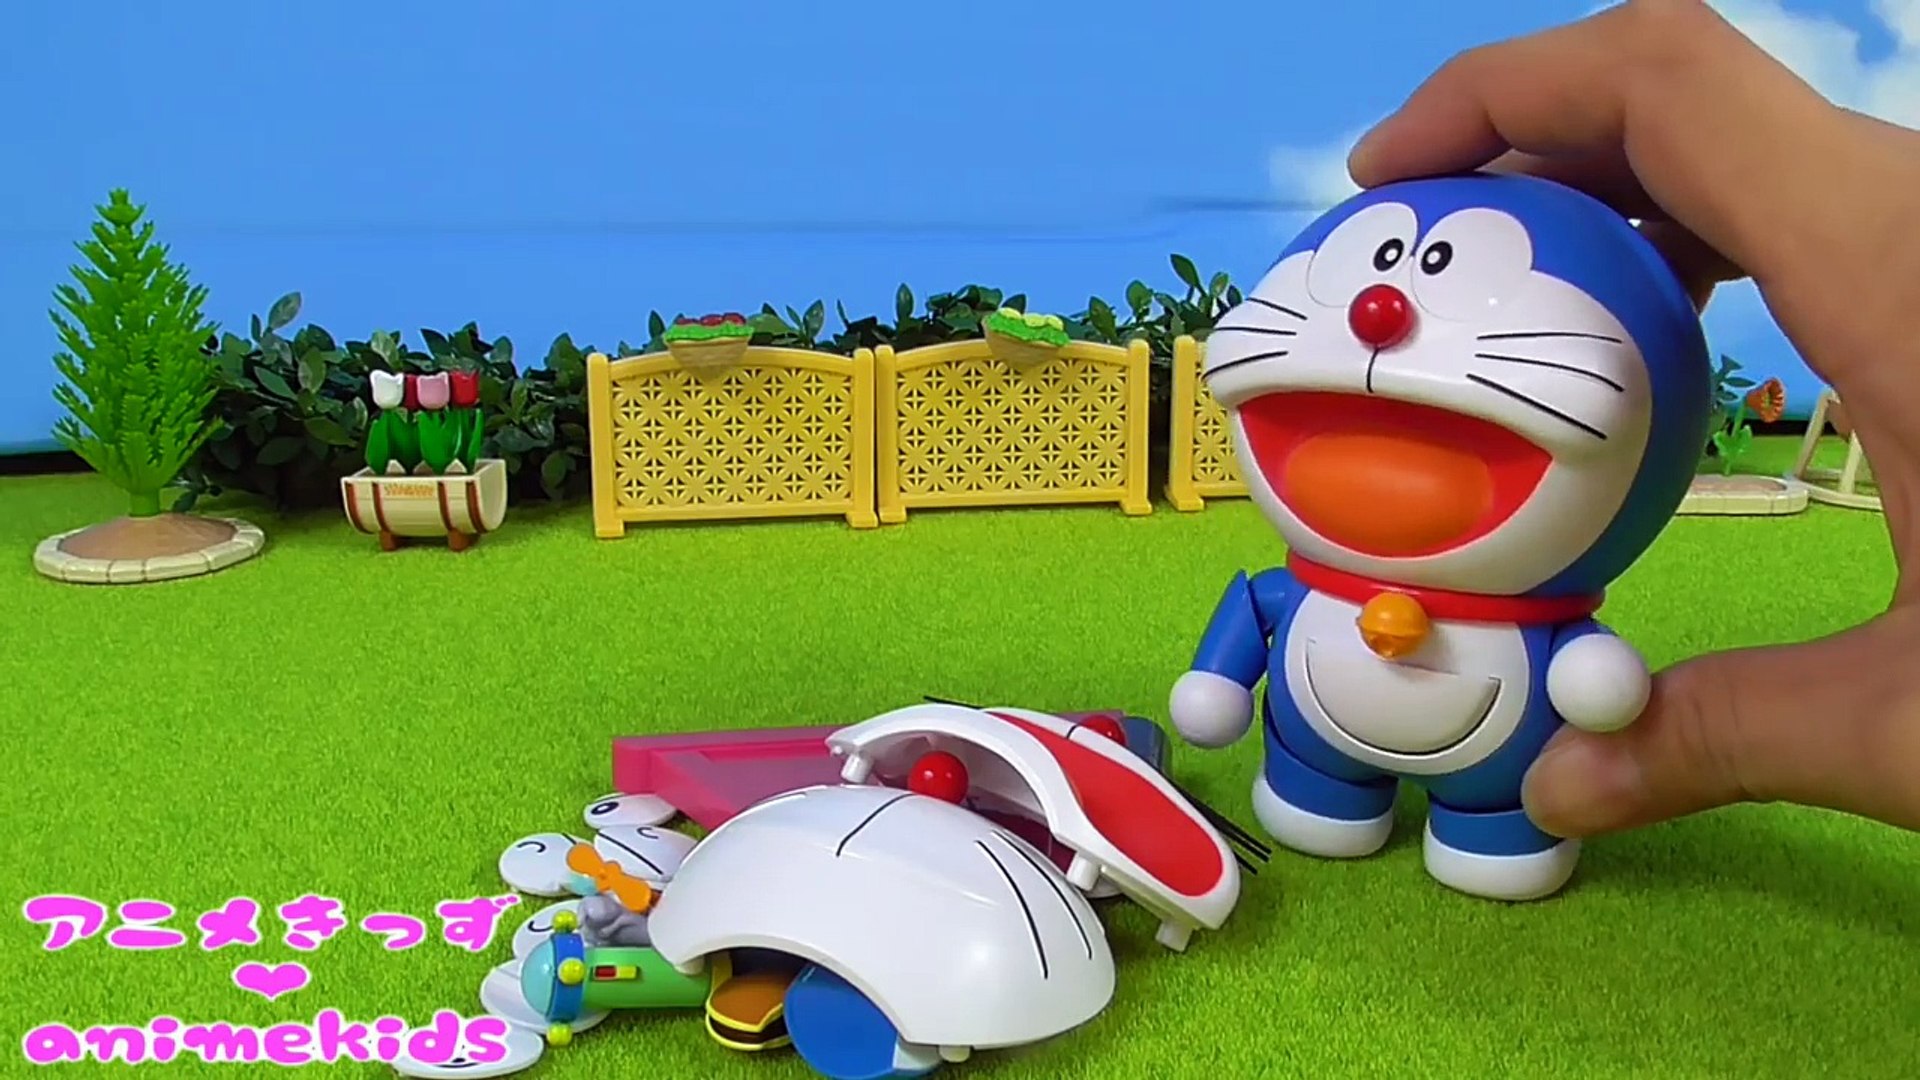 ドラえもん おもちゃ 人気動画 連続再生 まとめ アニメキッズ Animekids Doraemon Toy Dailymotion Video